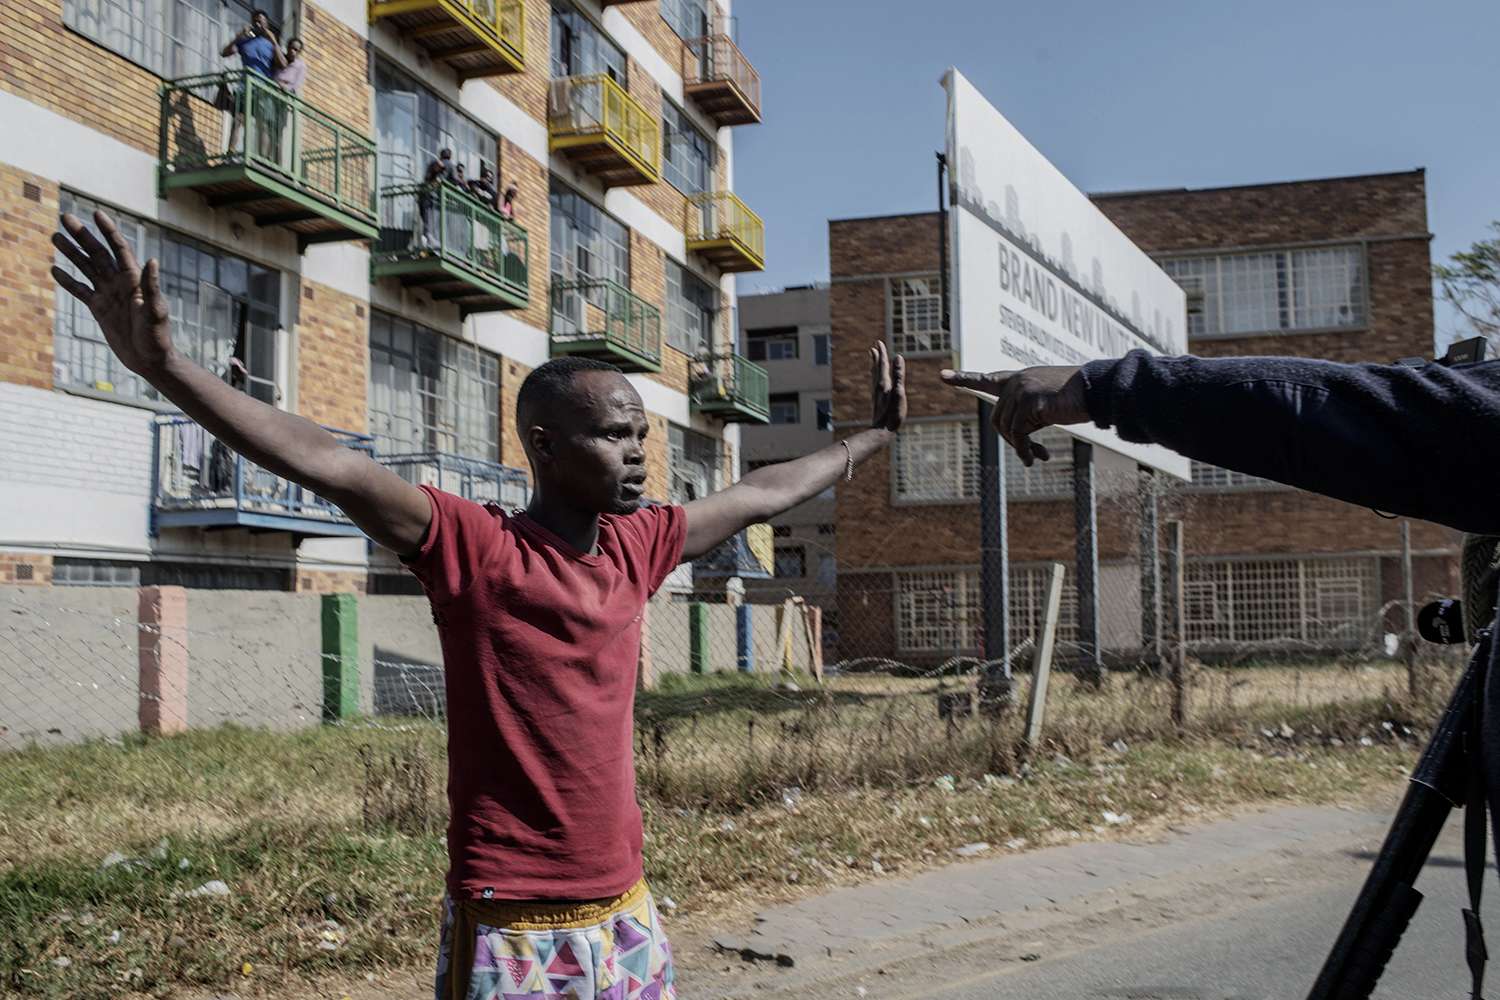 Một người biểu tình yêu cầu cảnh sát Nam Phi không nổ súng trong một cuộc biểu tình tại Johannesburg vào ngày 11/7/2021. Ảnh: LUCA SOLA/AFP VIA GETTY IMAGES